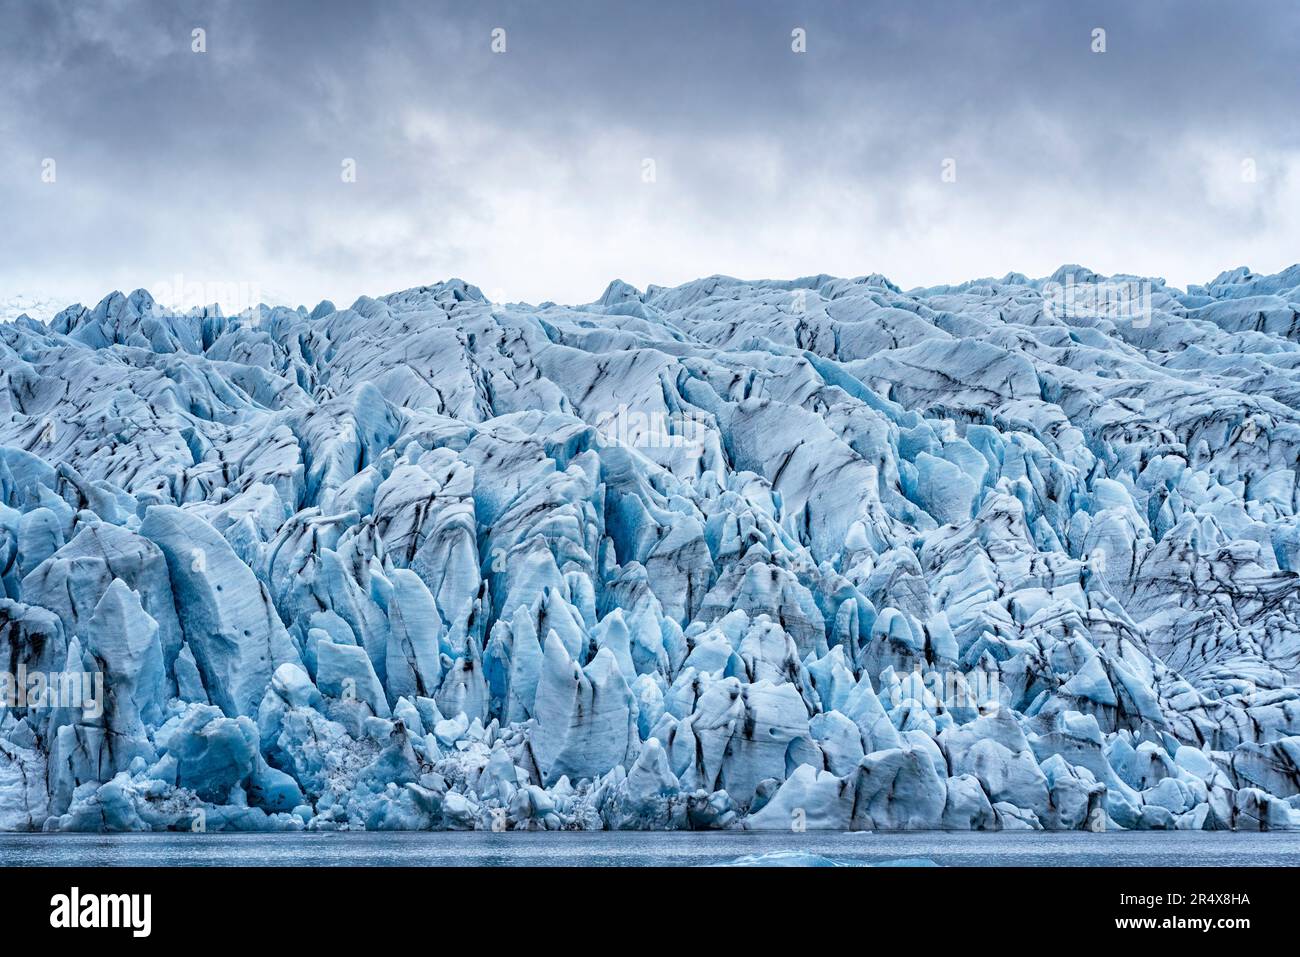 Aus nächster Nähe von der Fjallsarlon Glacier Lagoon der zerklüfteten blauen Eisformen des Fjallsjokull Glacier Endus, der sich hervorhebt... Stockfoto